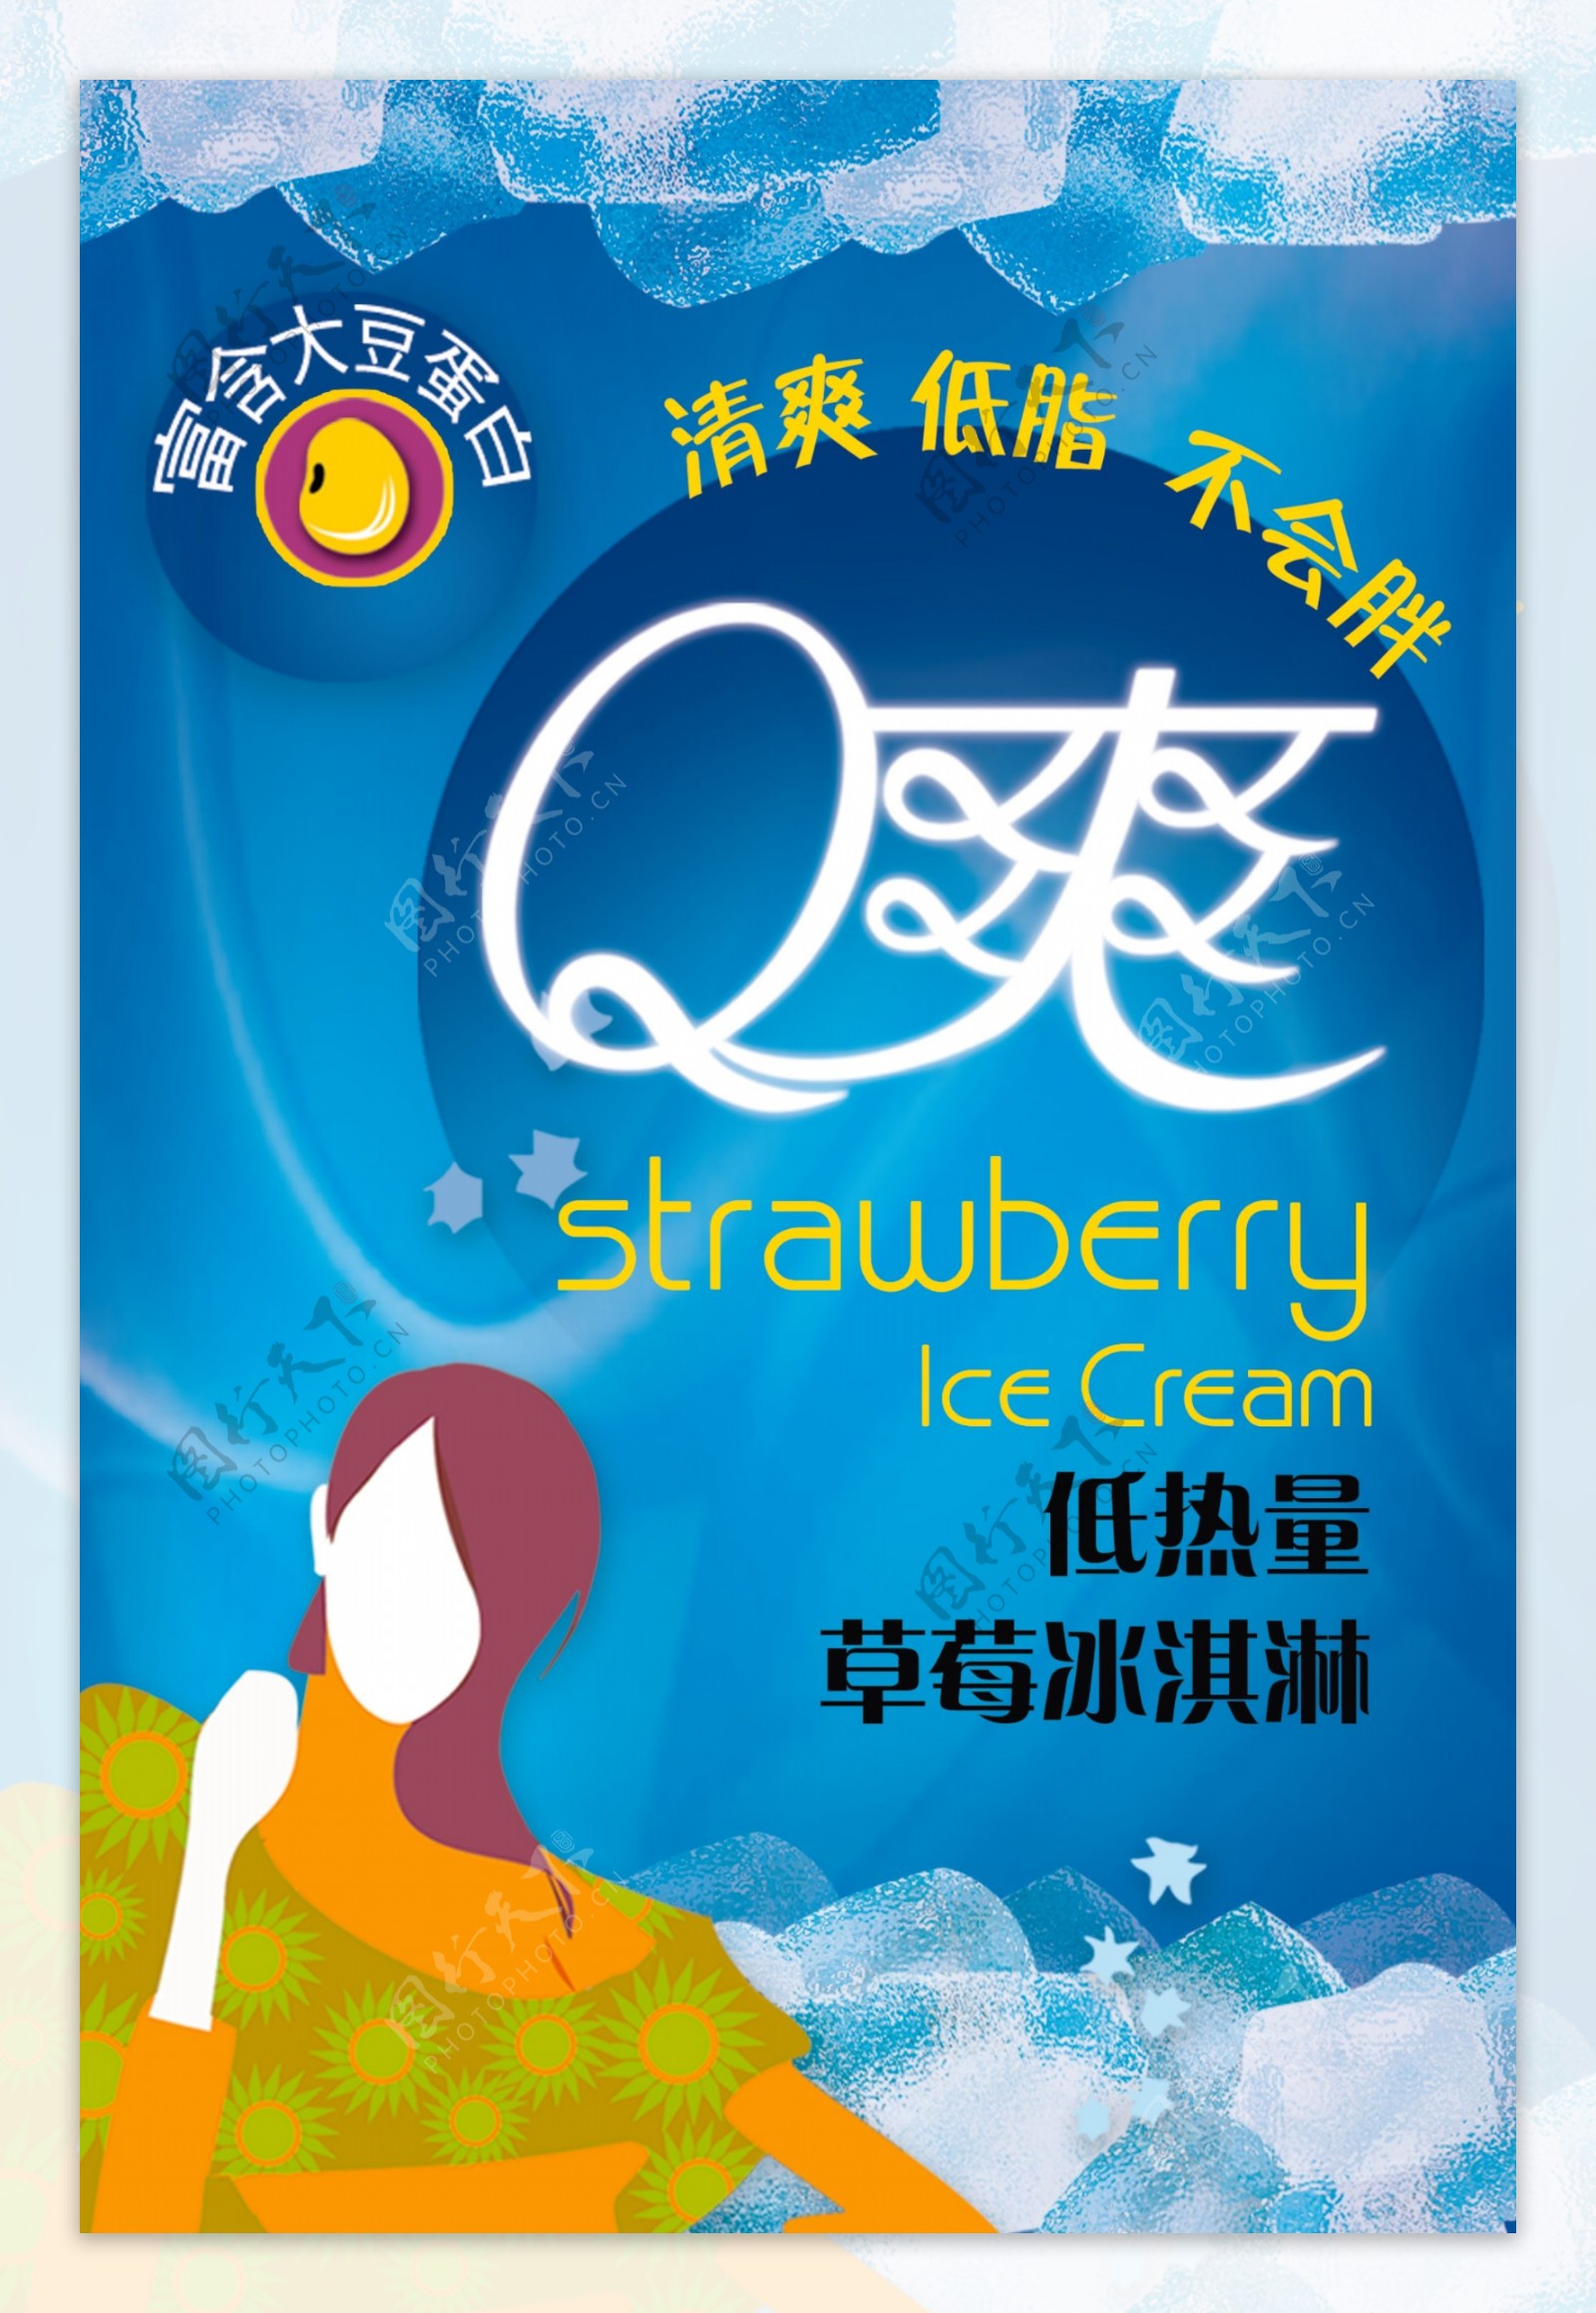 Q爽草莓冰淇淋宣传海报图片